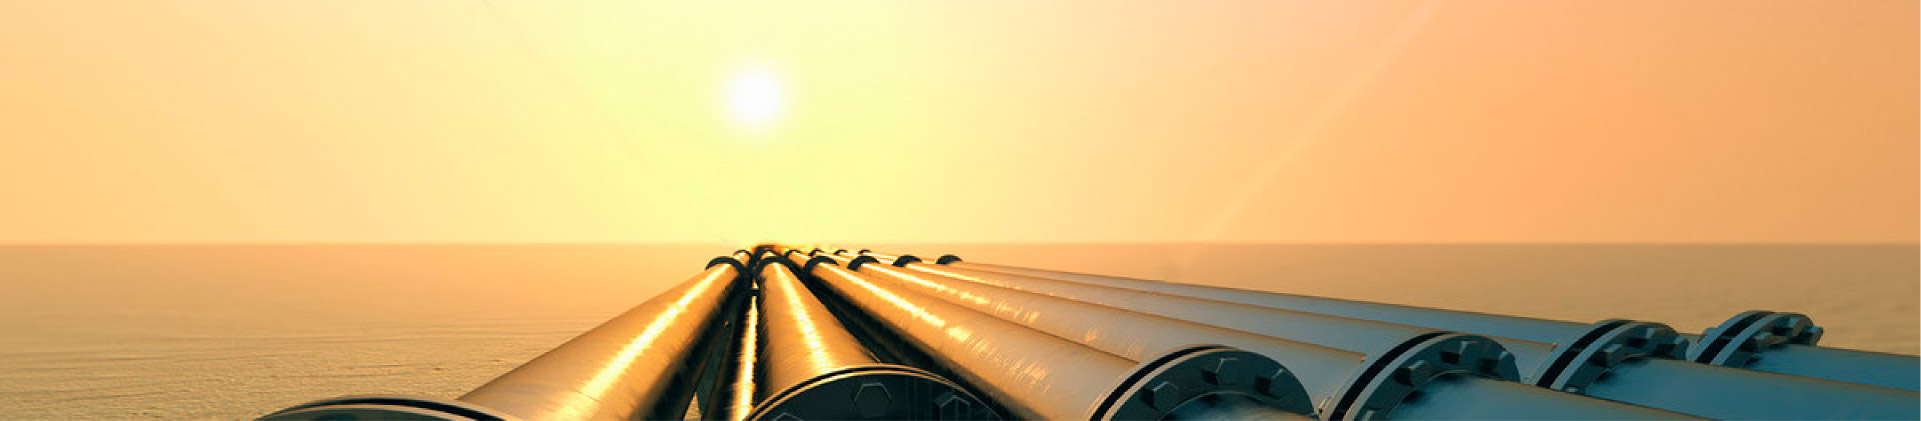 CNPC: Le gaz naturel va devenir un nouveau point de croissance de la coopération énergétique sino-ru